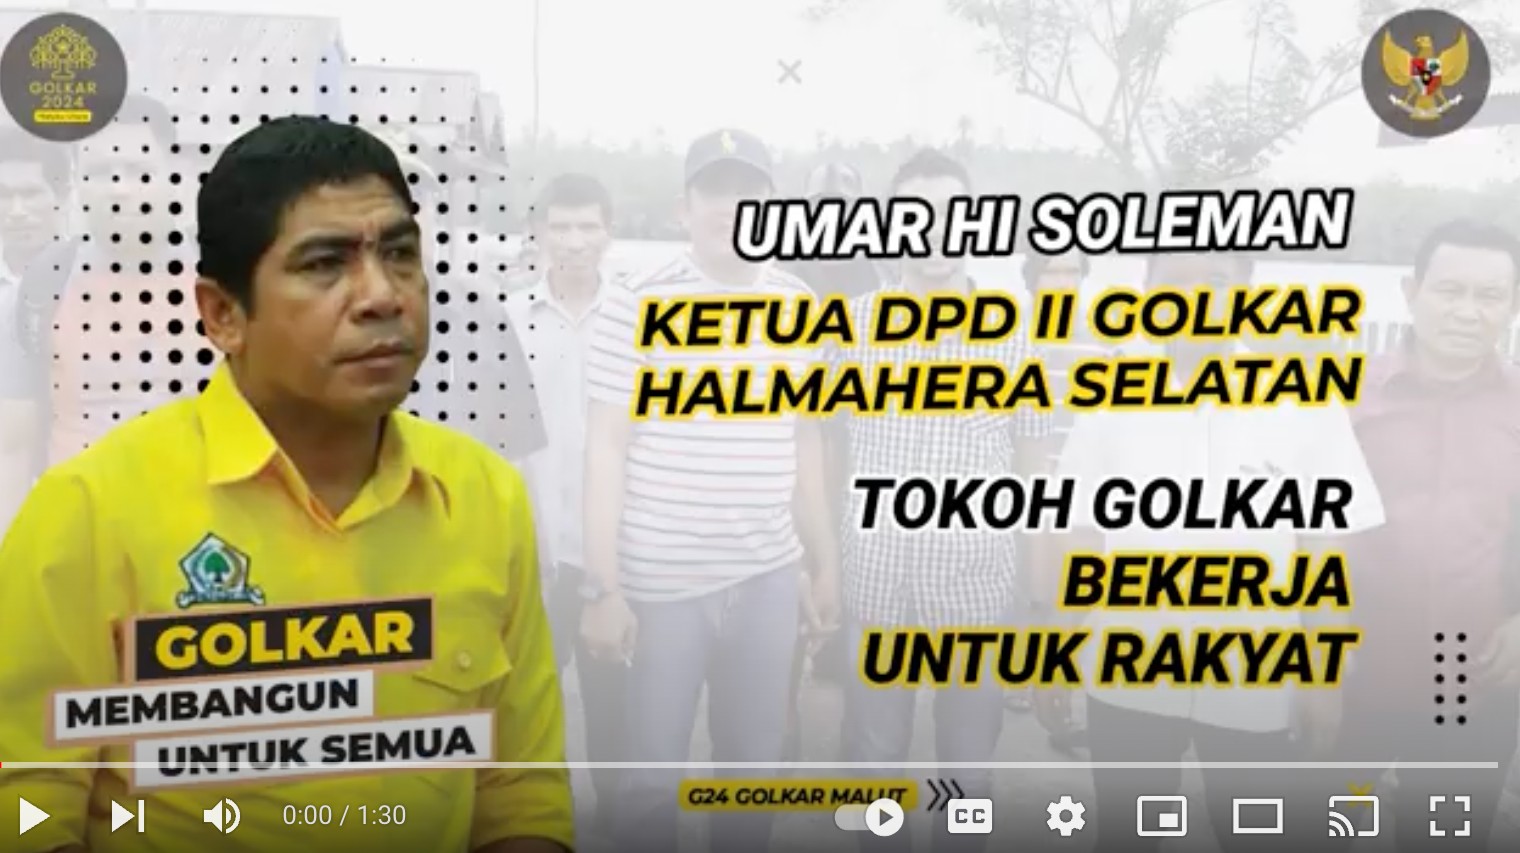 Ketua Partai Golkar DPD II Halmahera Selatan